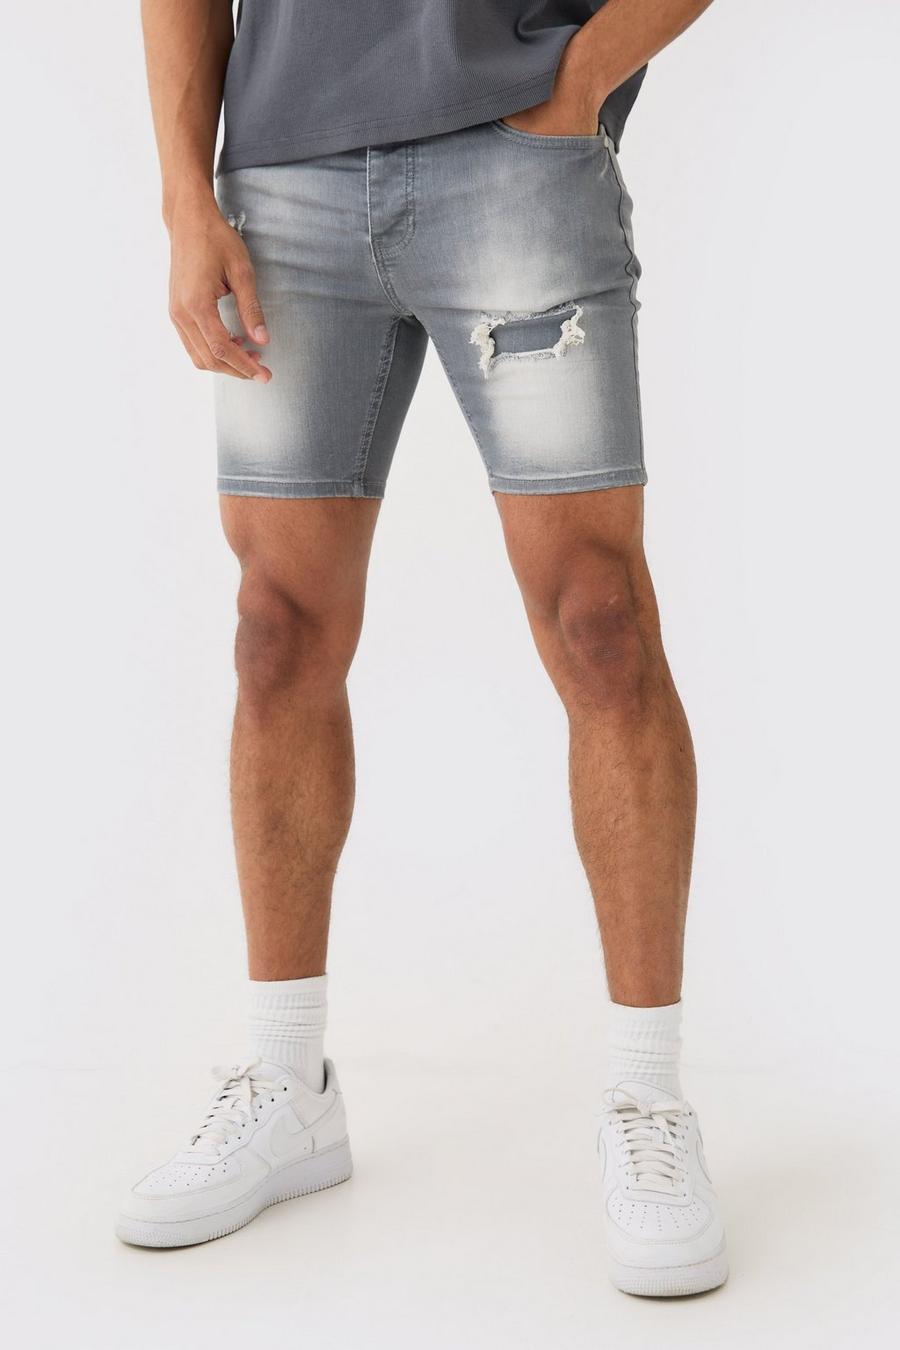 Pantalones cortos vaqueros pitillo elásticos con desgarros cosidos en gris, Grey image number 1